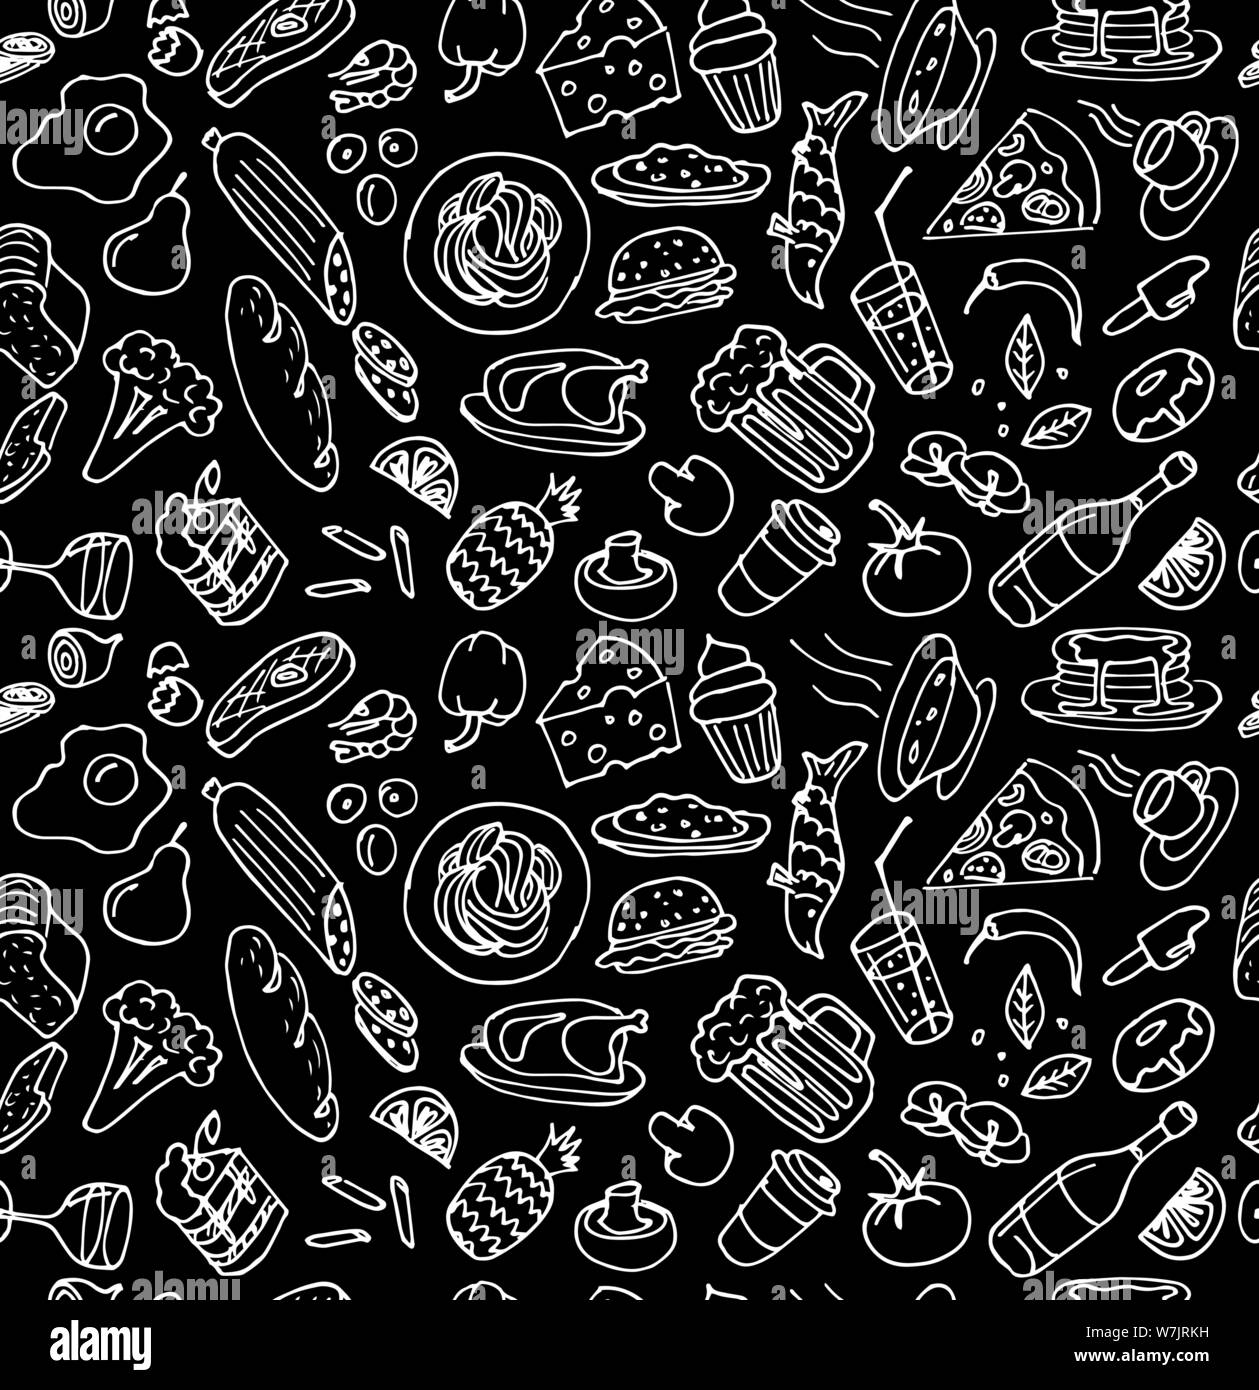 Vari piatti di cucina fatti a mano doodle contorno bianco gesso schizzo senza cuciture motivo su sfondo nero. Disegno vettoriale illustrazione grafica di una vignetta di cottura Illustrazione Vettoriale